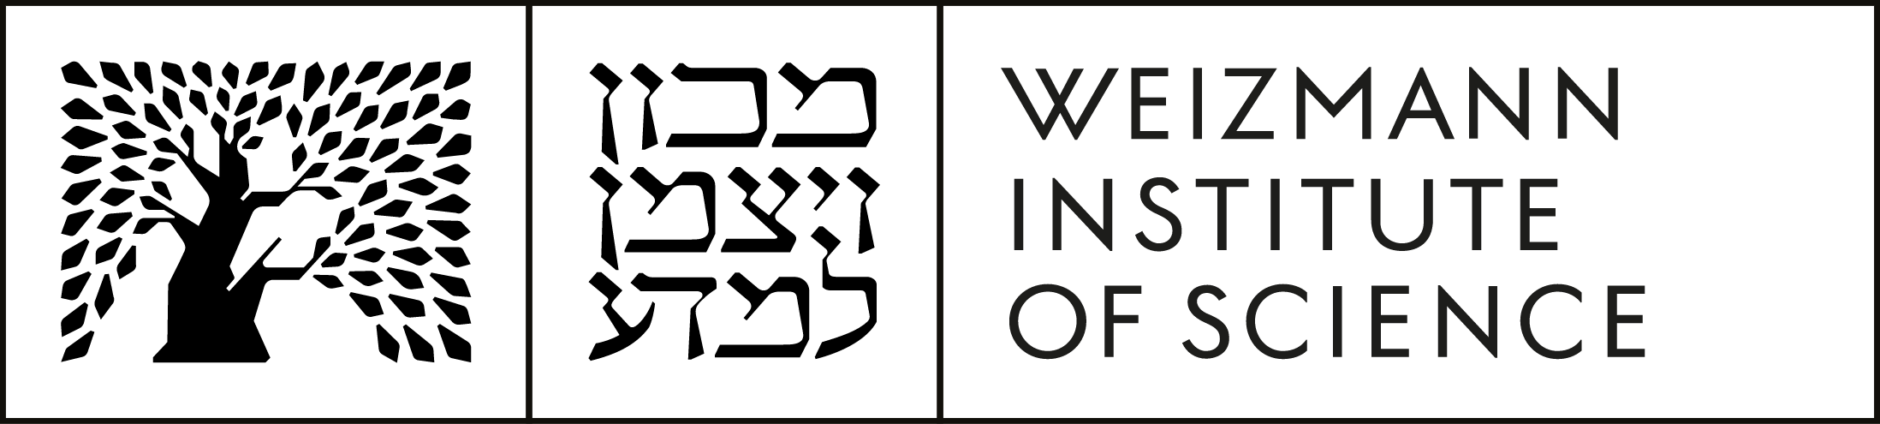 Weizmann Institute of Science logo.